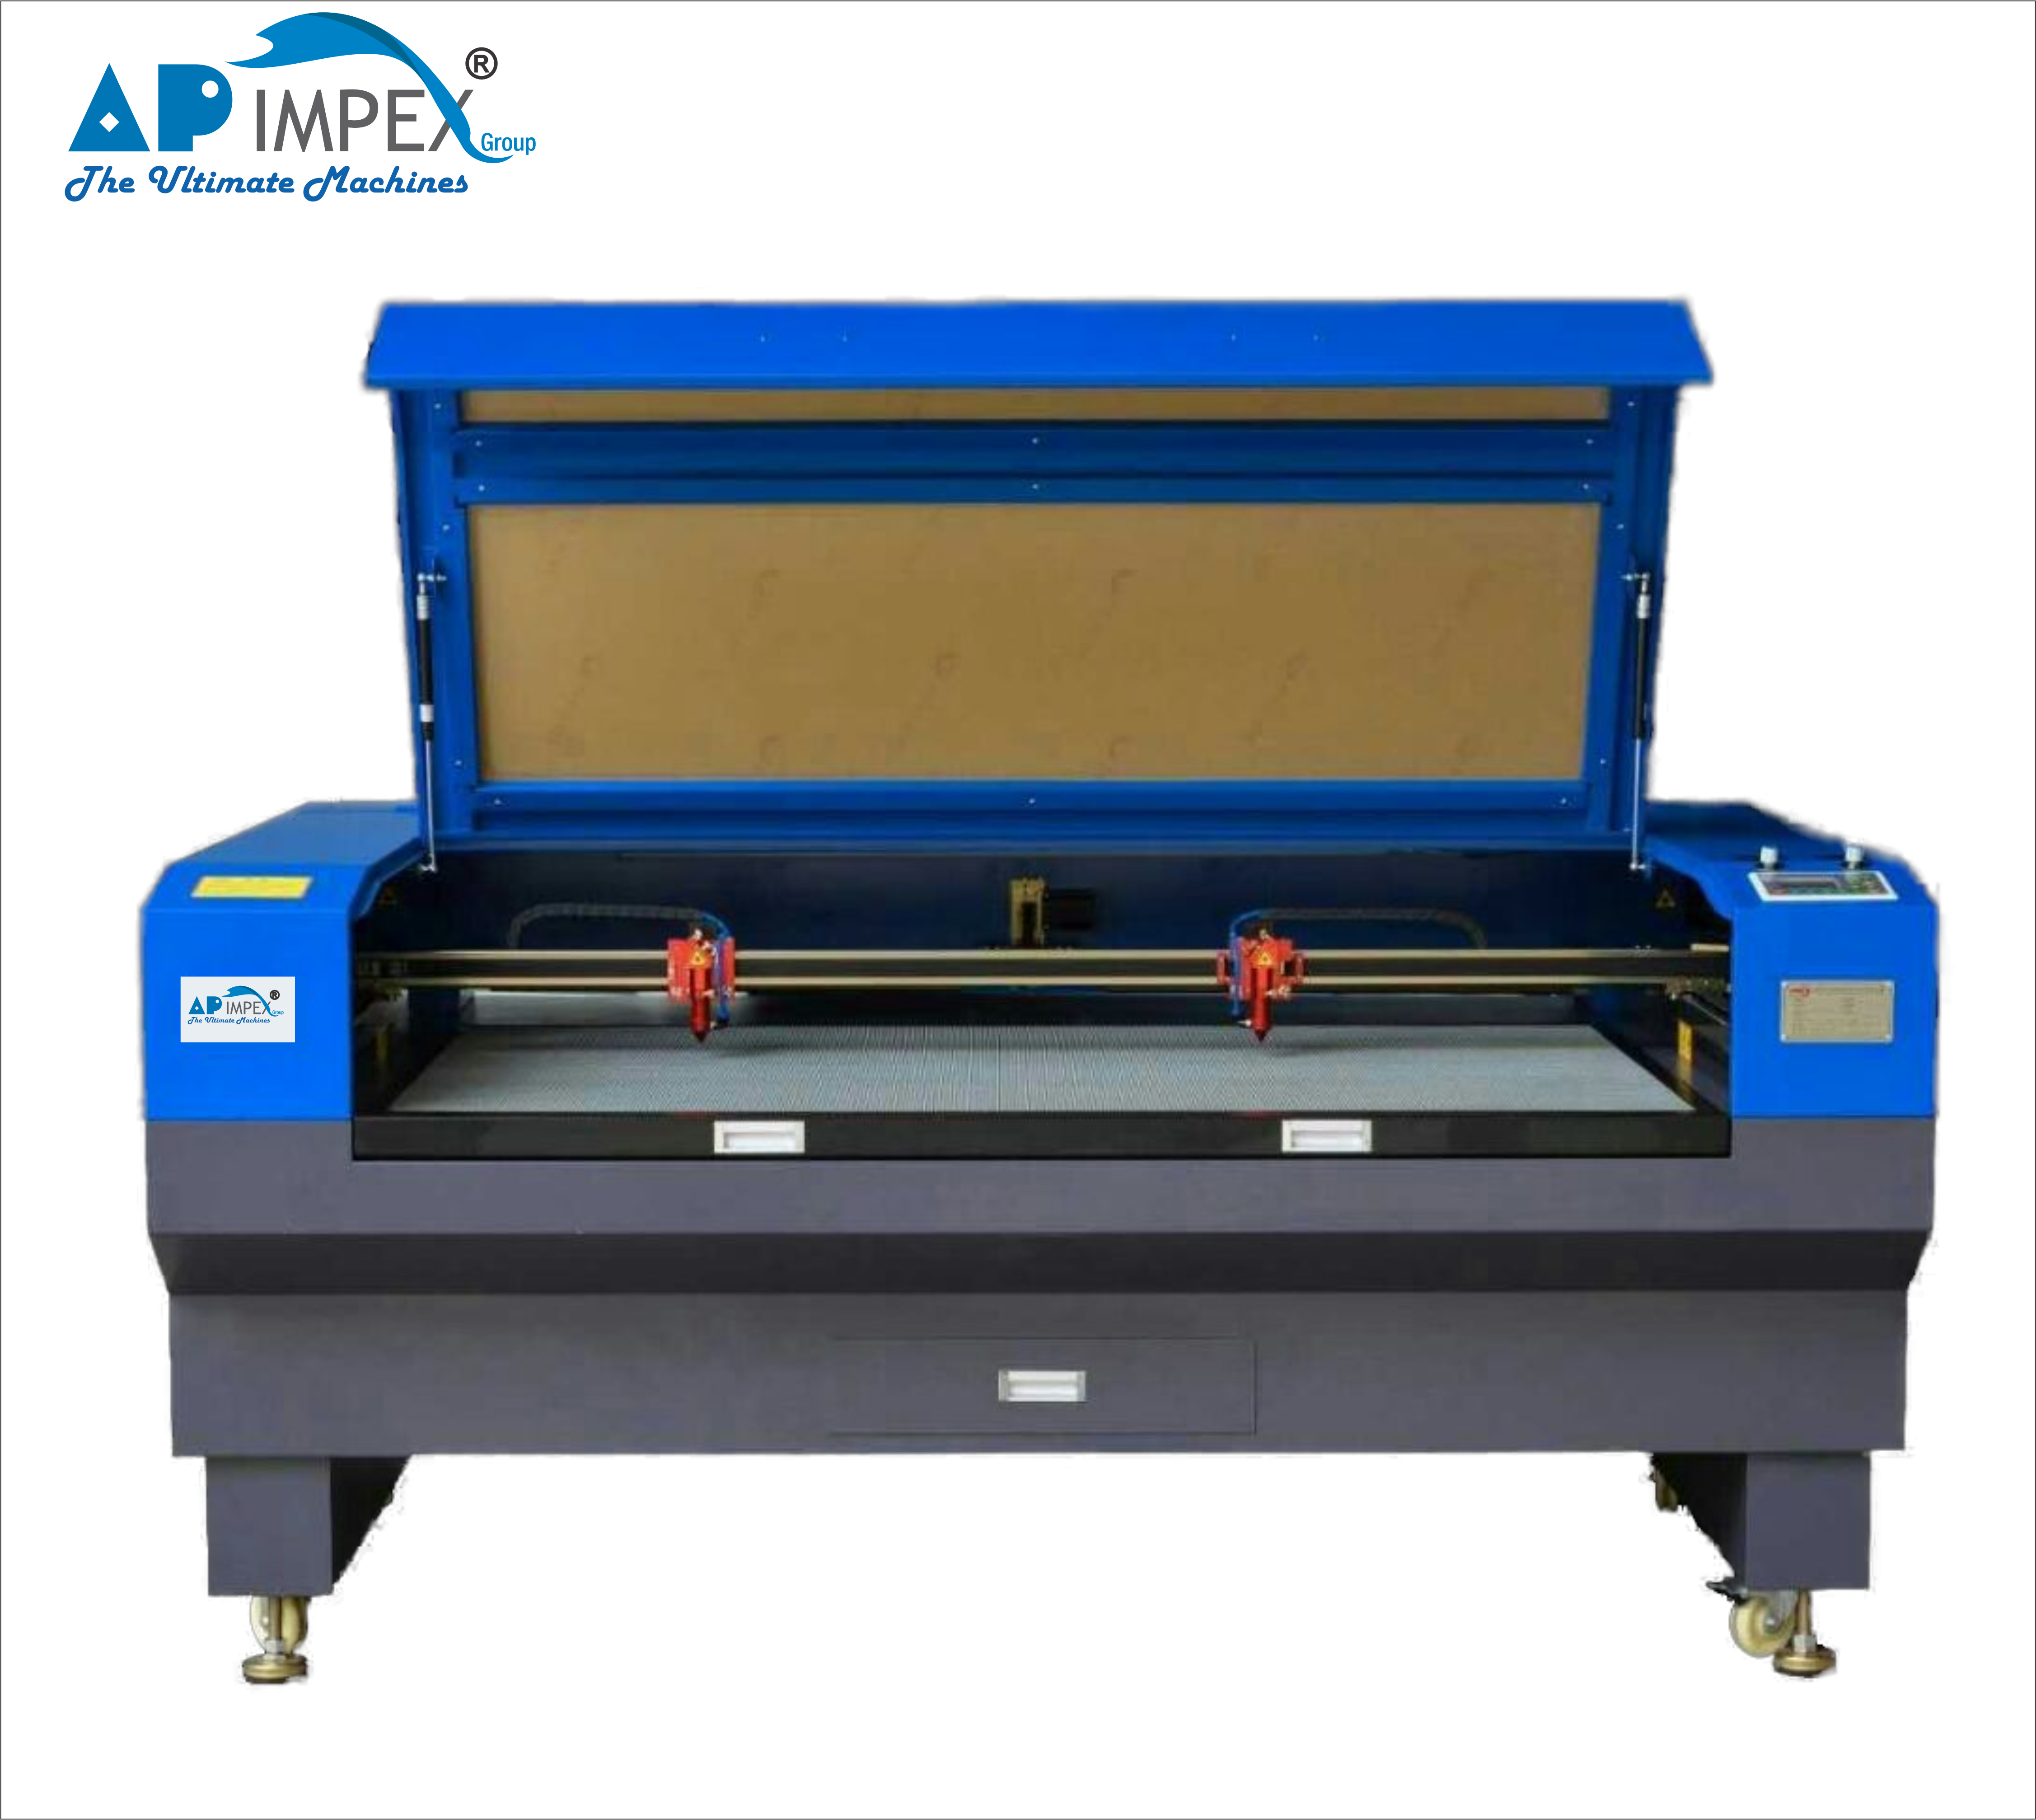 API - 1490 laser cutting machine